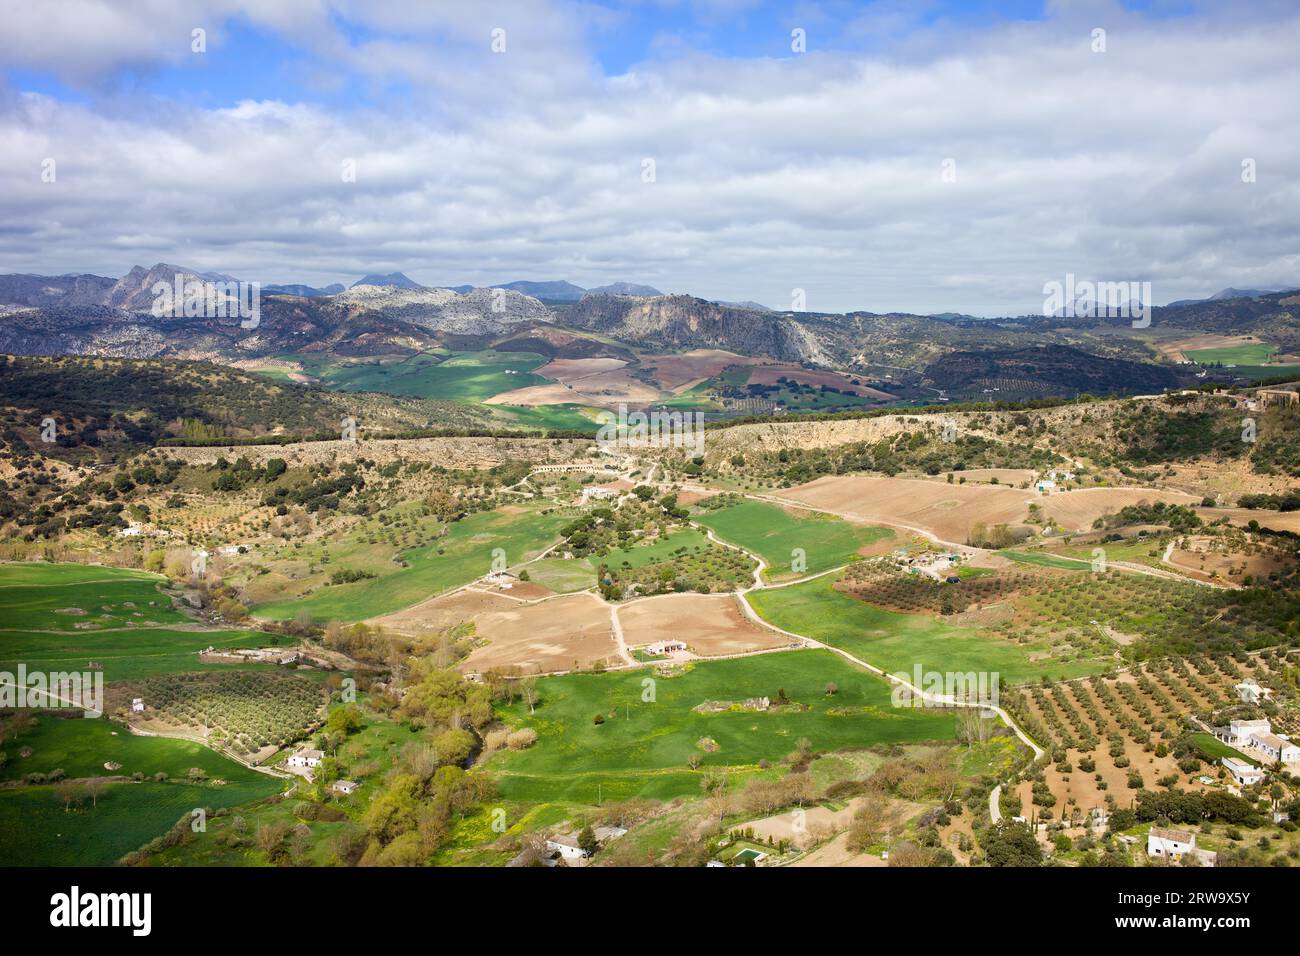 Paysage pittoresque avec champs cultivés et prairies verdoyantes de campagne vallonnée d'Andalousie dans le sud de l'Espagne Banque D'Images